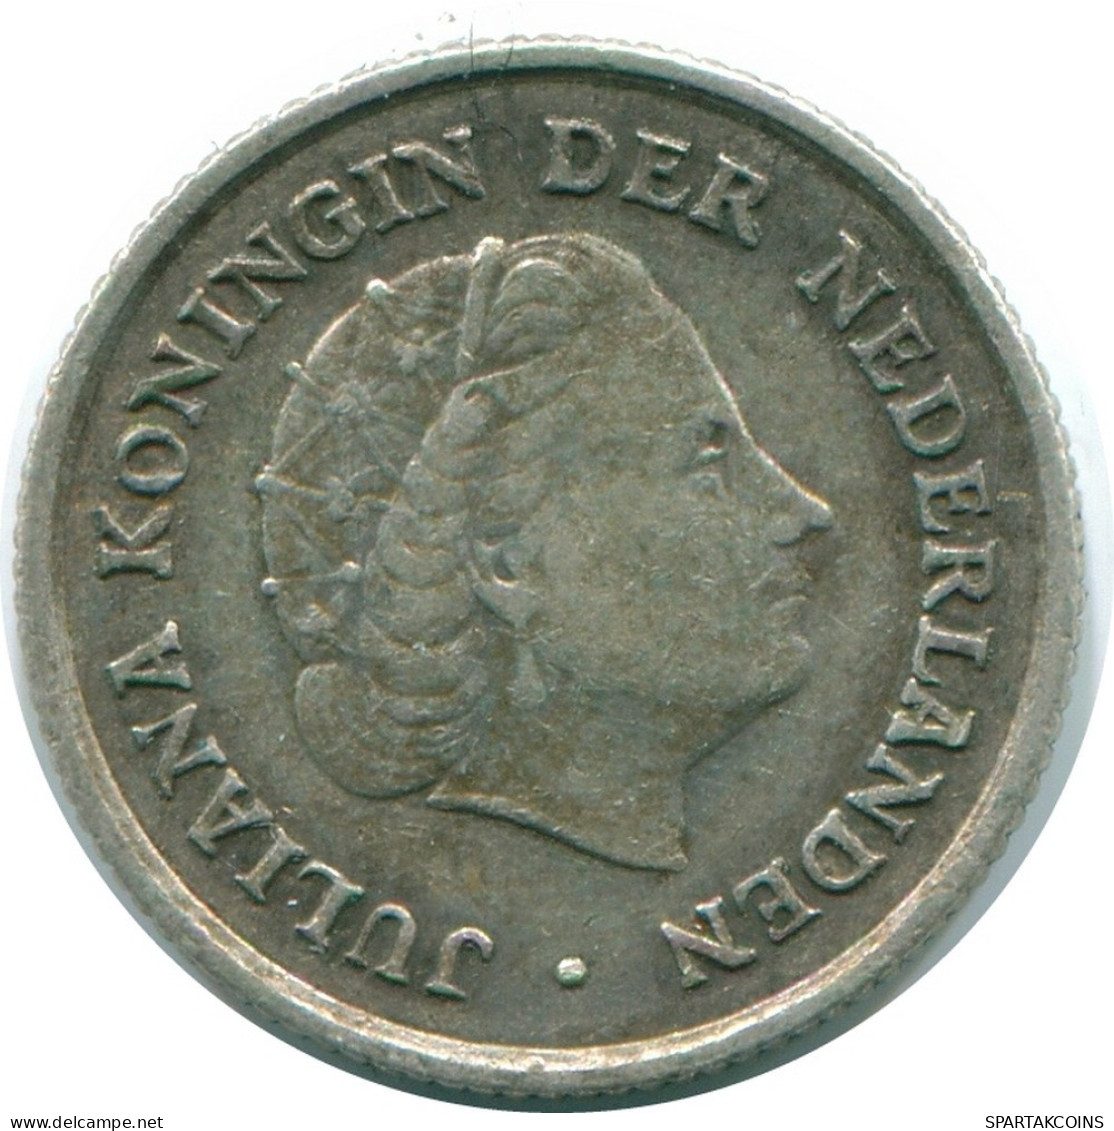 1/10 GULDEN 1963 NIEDERLÄNDISCHE ANTILLEN SILBER Koloniale Münze #NL12636.3.D.A - Antilles Néerlandaises